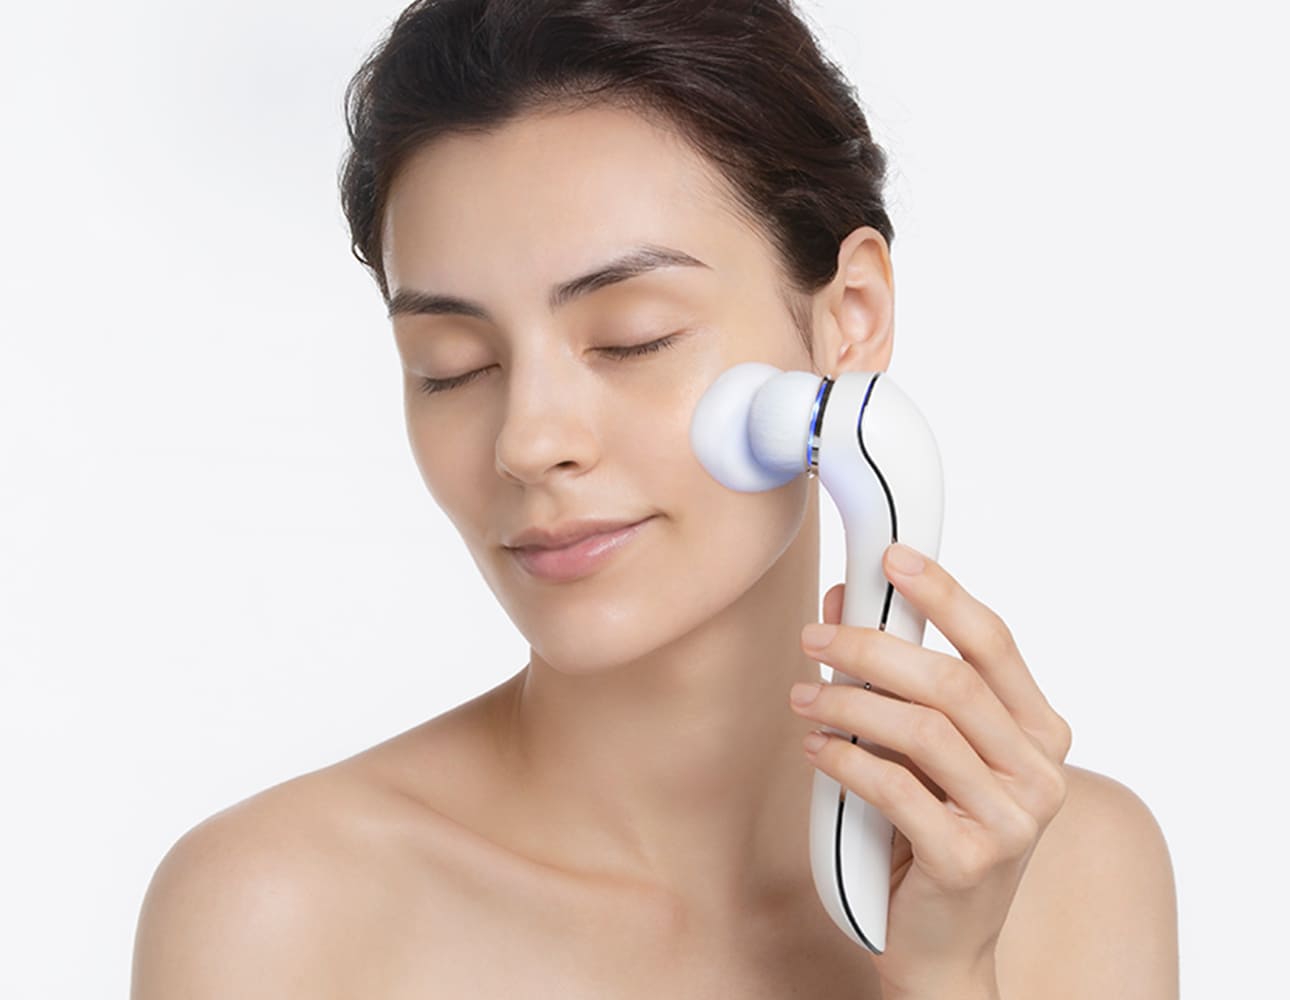 リファクリア - ReFa CLEAR :3D音波洗顔ブラシ | 商品情報 | ReFa（リファ）公式ブランドサイト